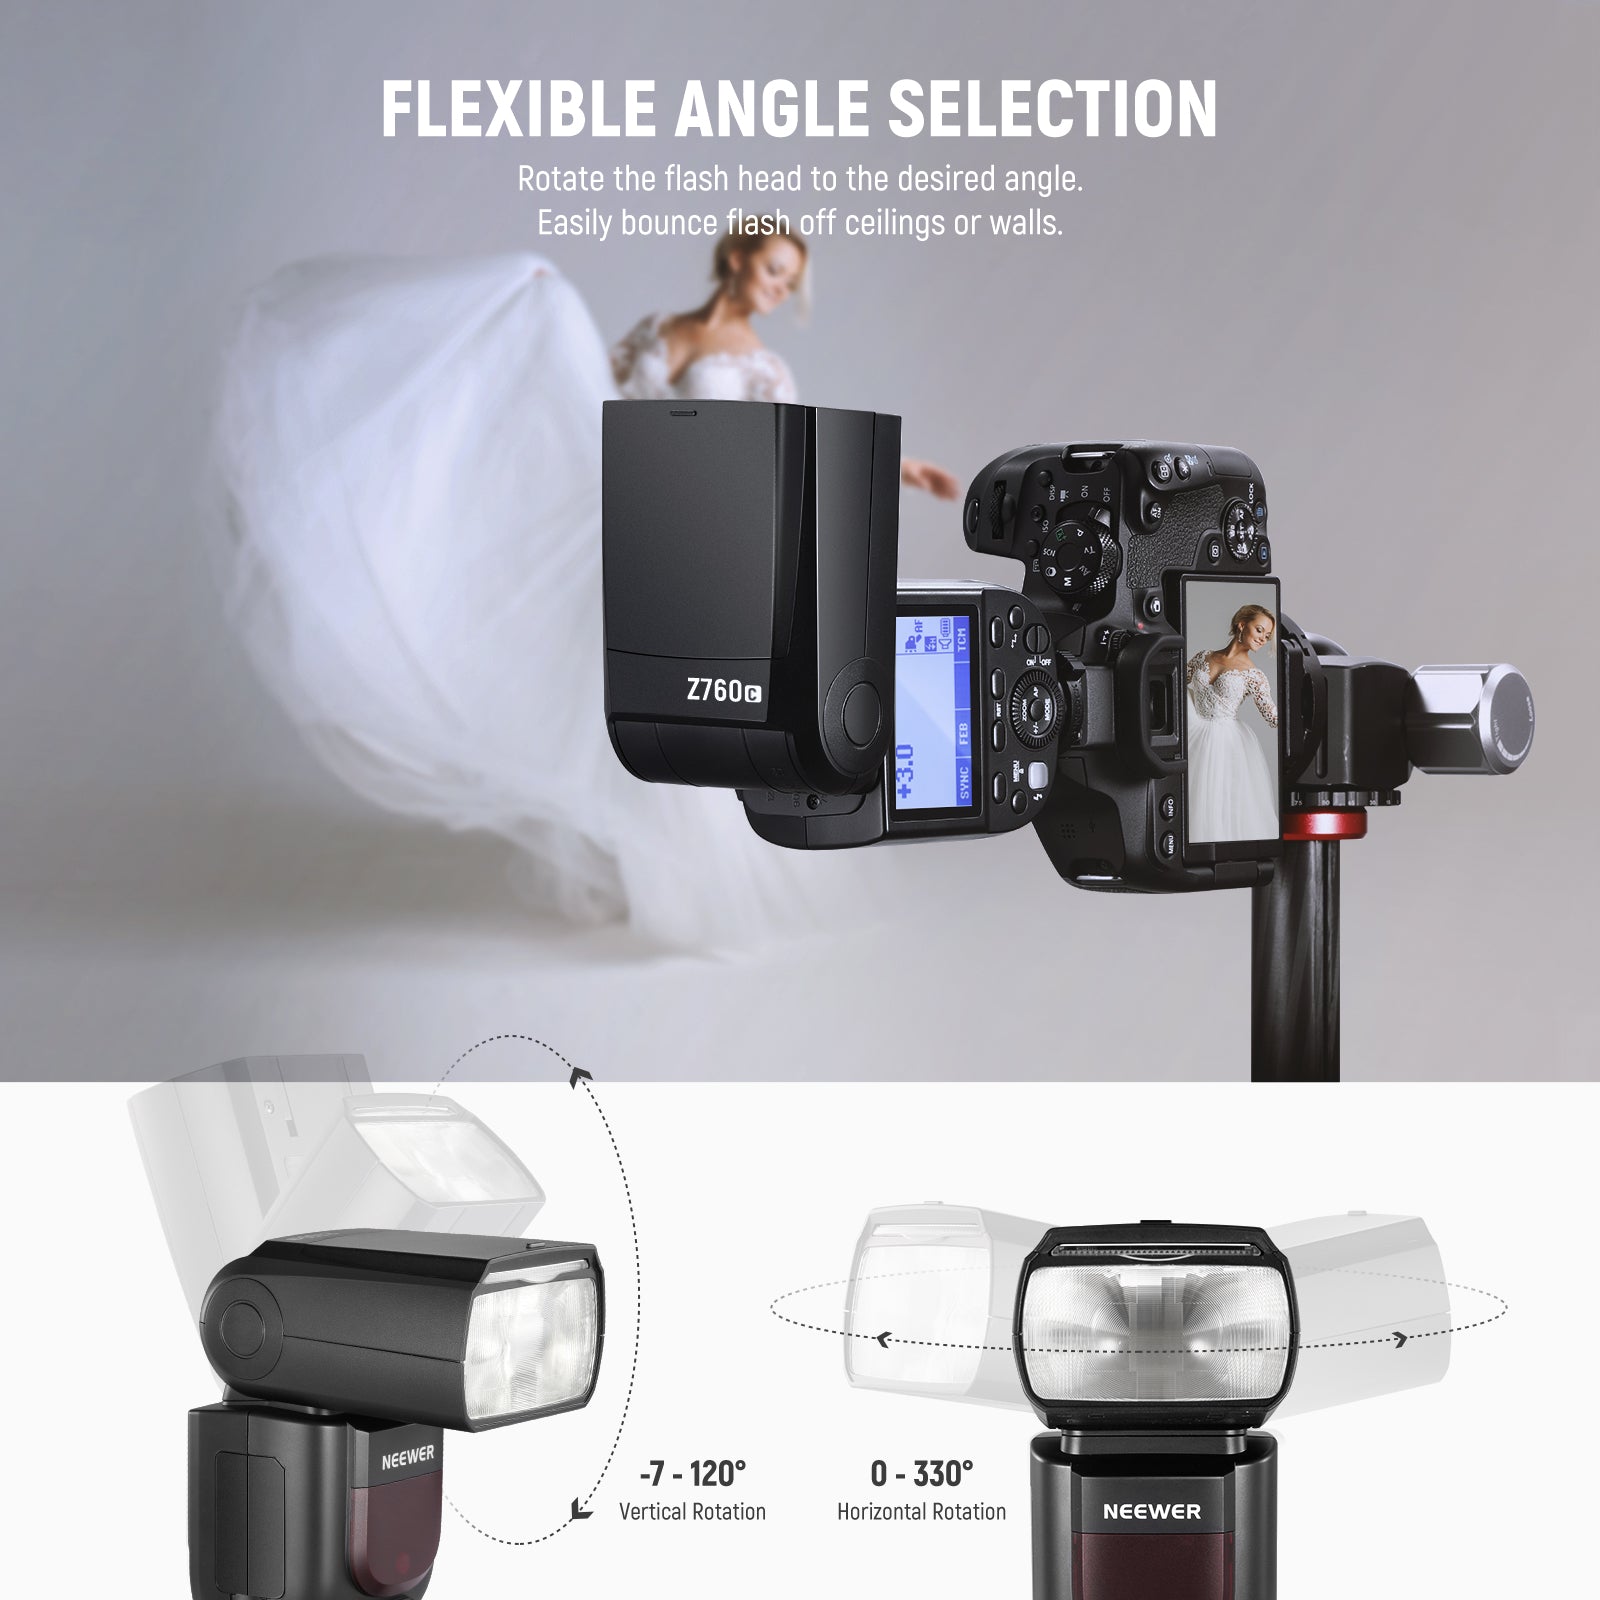 NEEWER Z1-S TTL Round Head Flash Speedlite for Sony Cameras - NEEWER